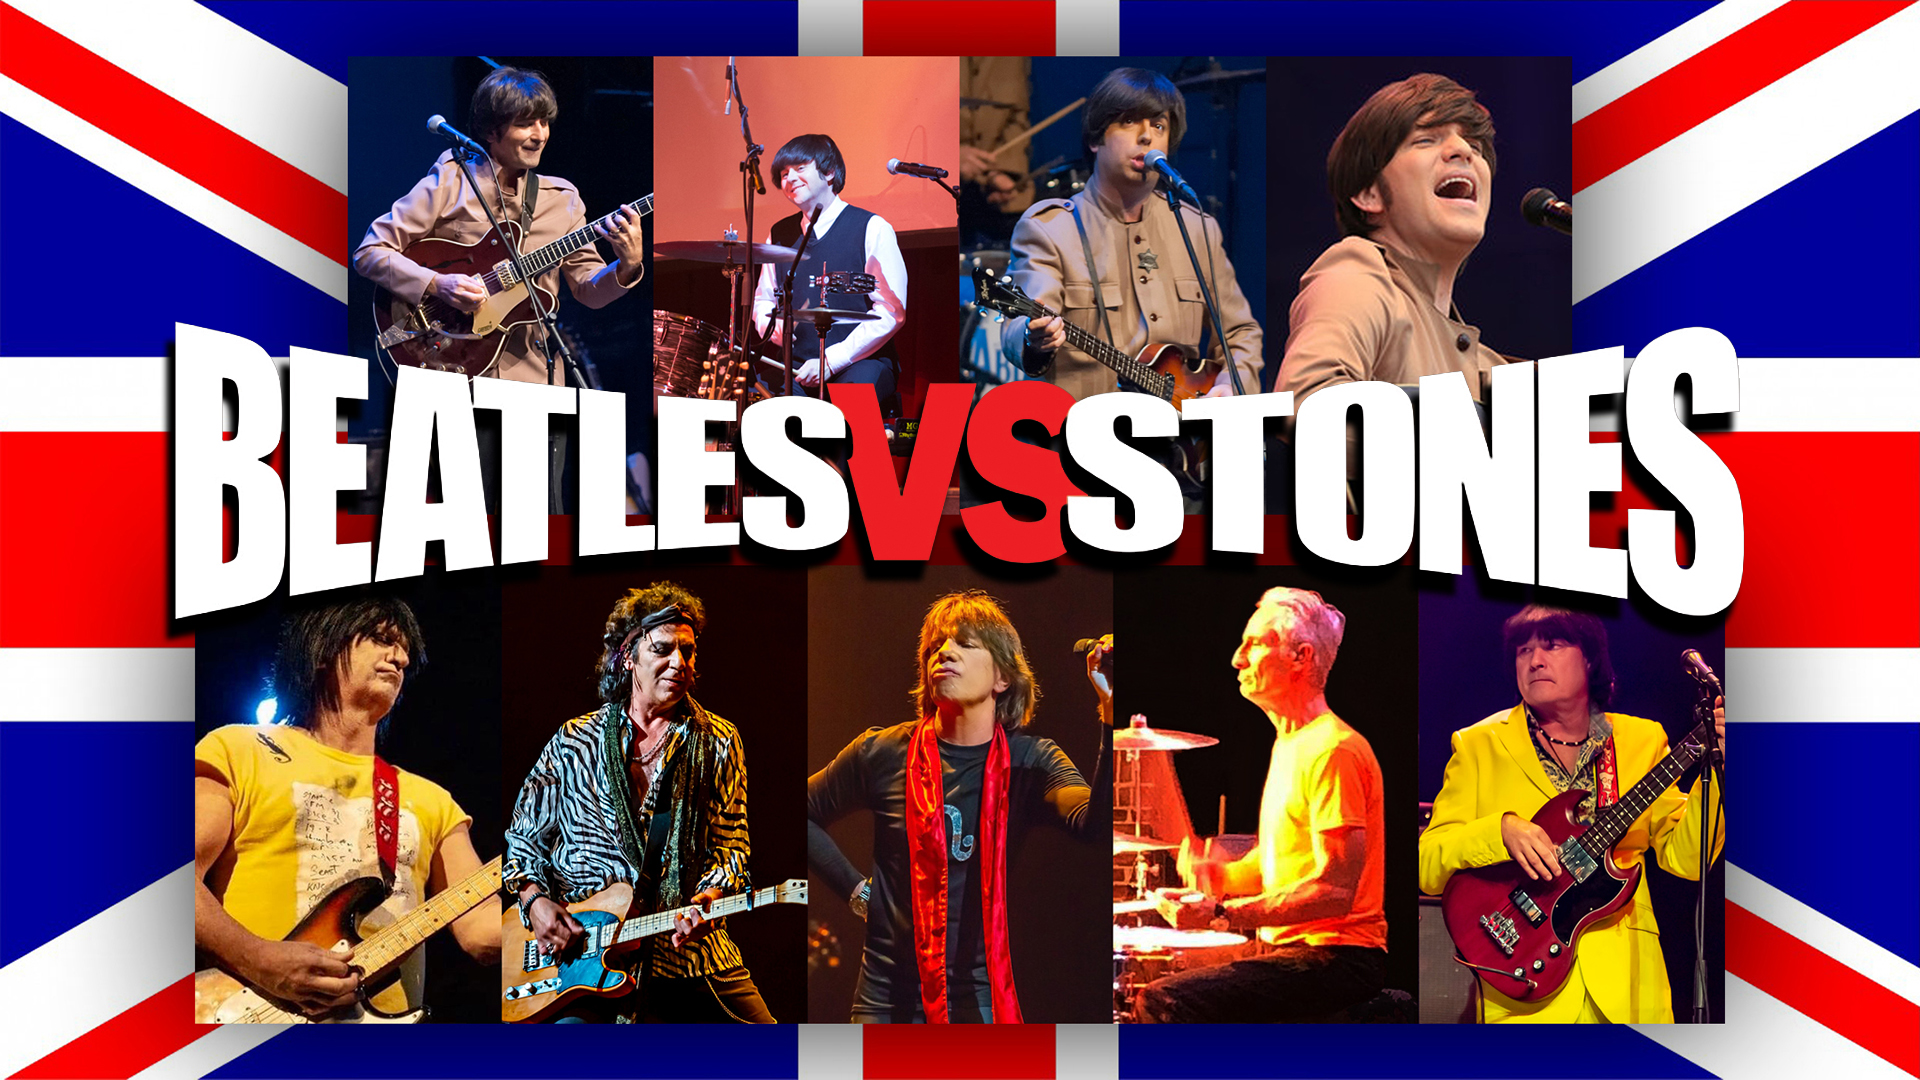 Beatles vs Stones 1920 x 1080